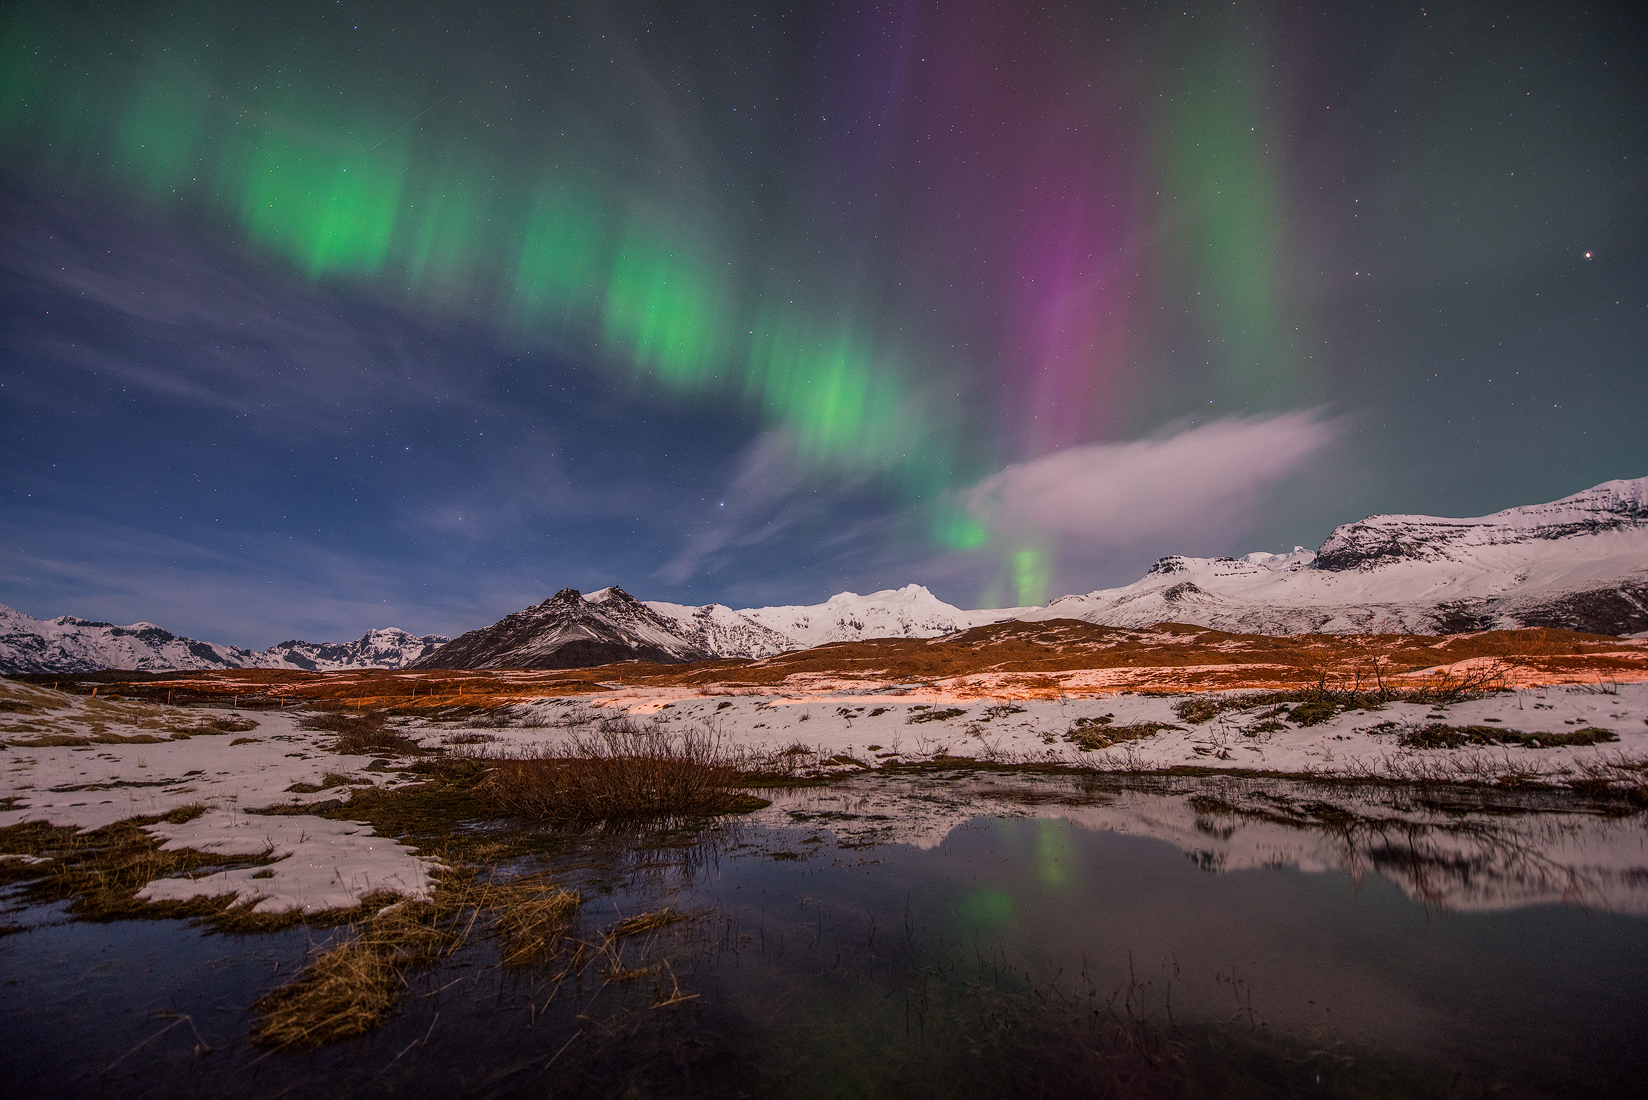 枯草と雪の殺風景な大地も、夜になればオーロラが躍りアイスランドは魔法にかかったような世界となる